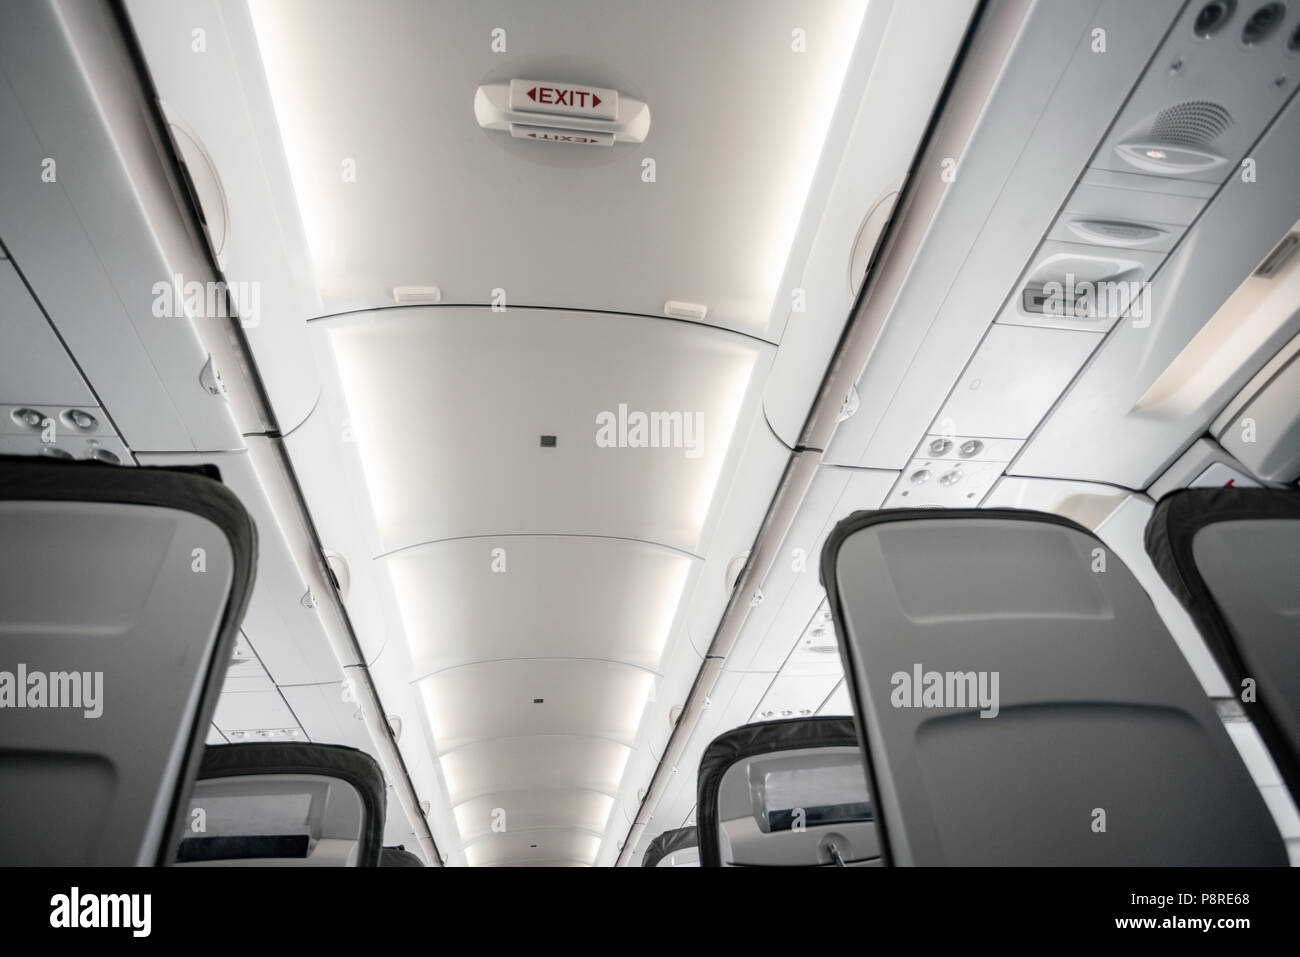 Los asientos de los aviones vacíos en la cabina. Los asientos de los aviones modernos en perspectiva. Concepto de transporte. Los aviones de larga distancia de vuelo internacional Foto de stock